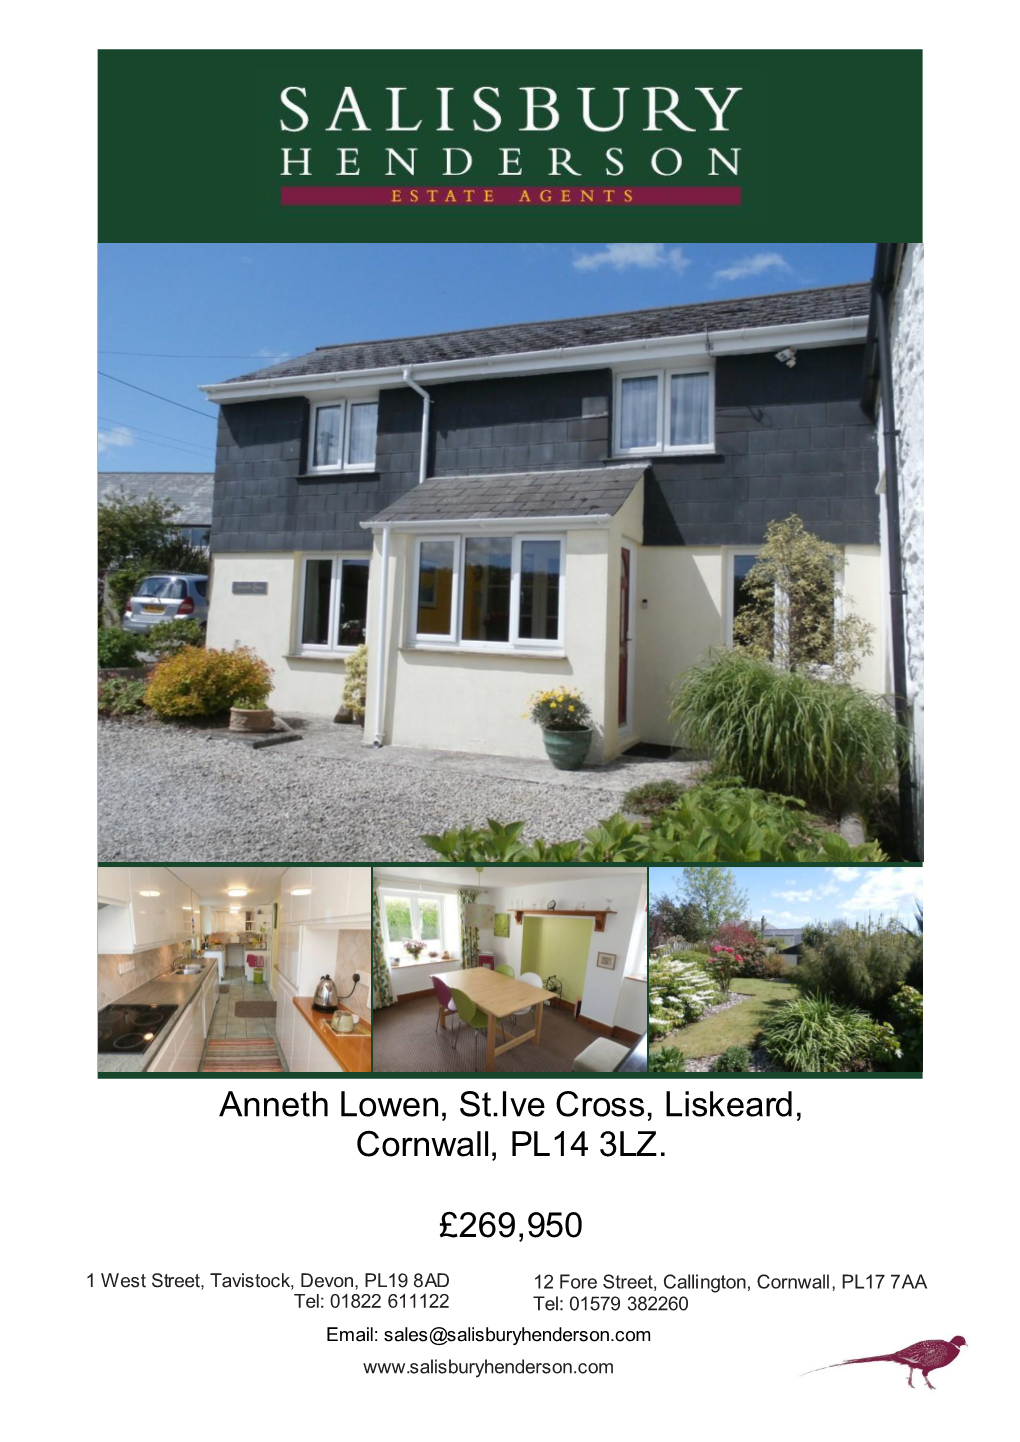 Anneth Lowen, St.Ive Cross, Liskeard, Cornwall, PL14 3LZ. £269,950